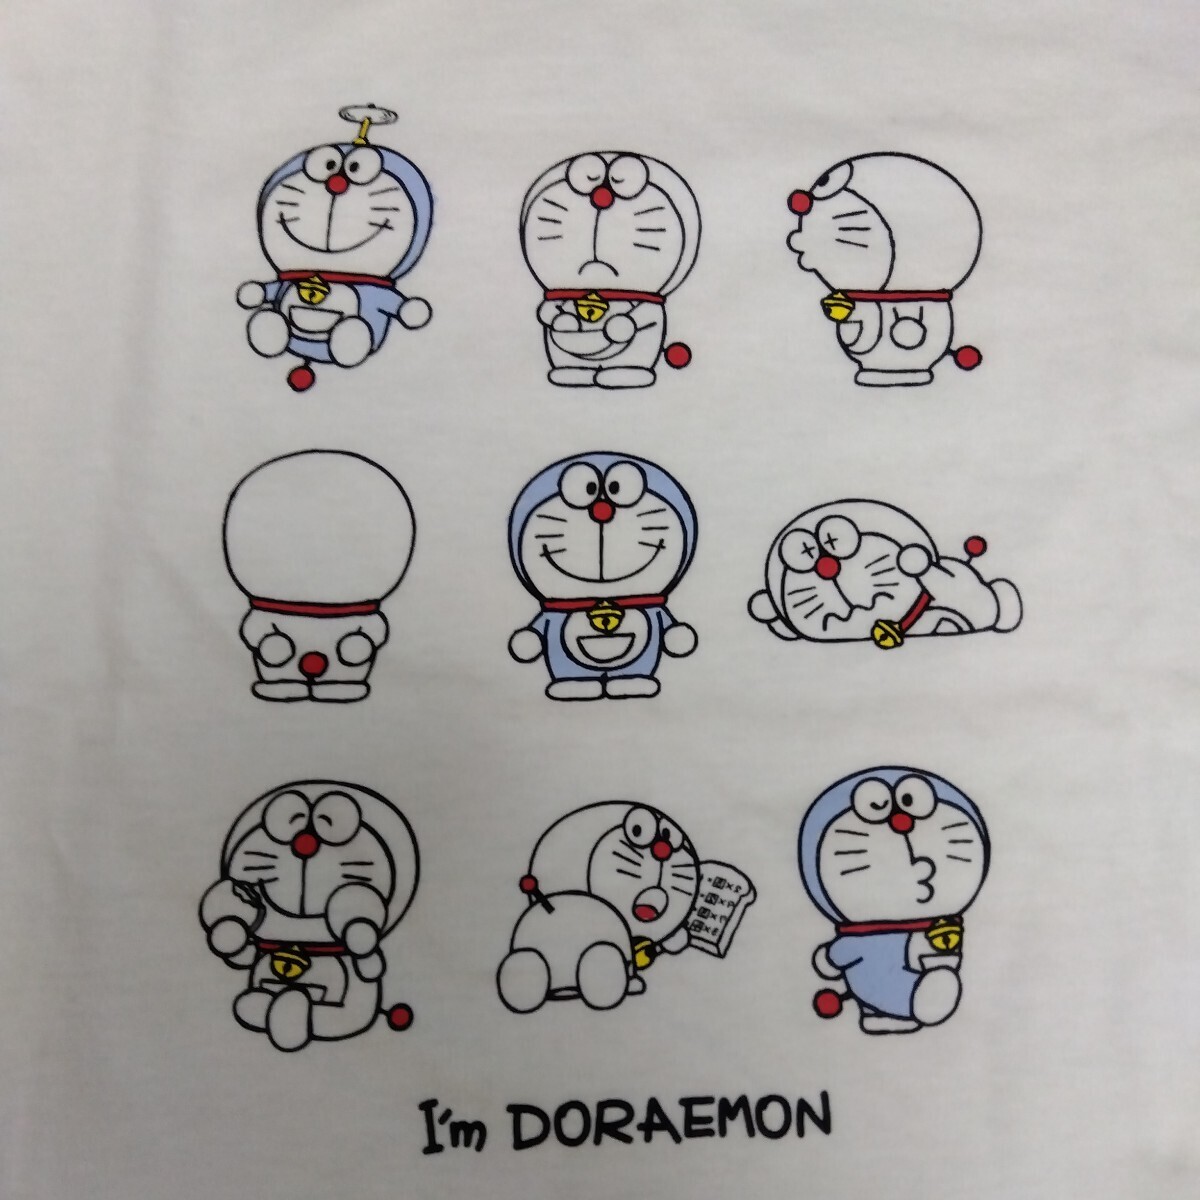 M I'm Doraemon ドラえもん 新品 長袖Tシャツ ロンT カットソー メンズ 紳士 白色 藤子プロ ドラエモン キャラクターサンリオ タケコプター